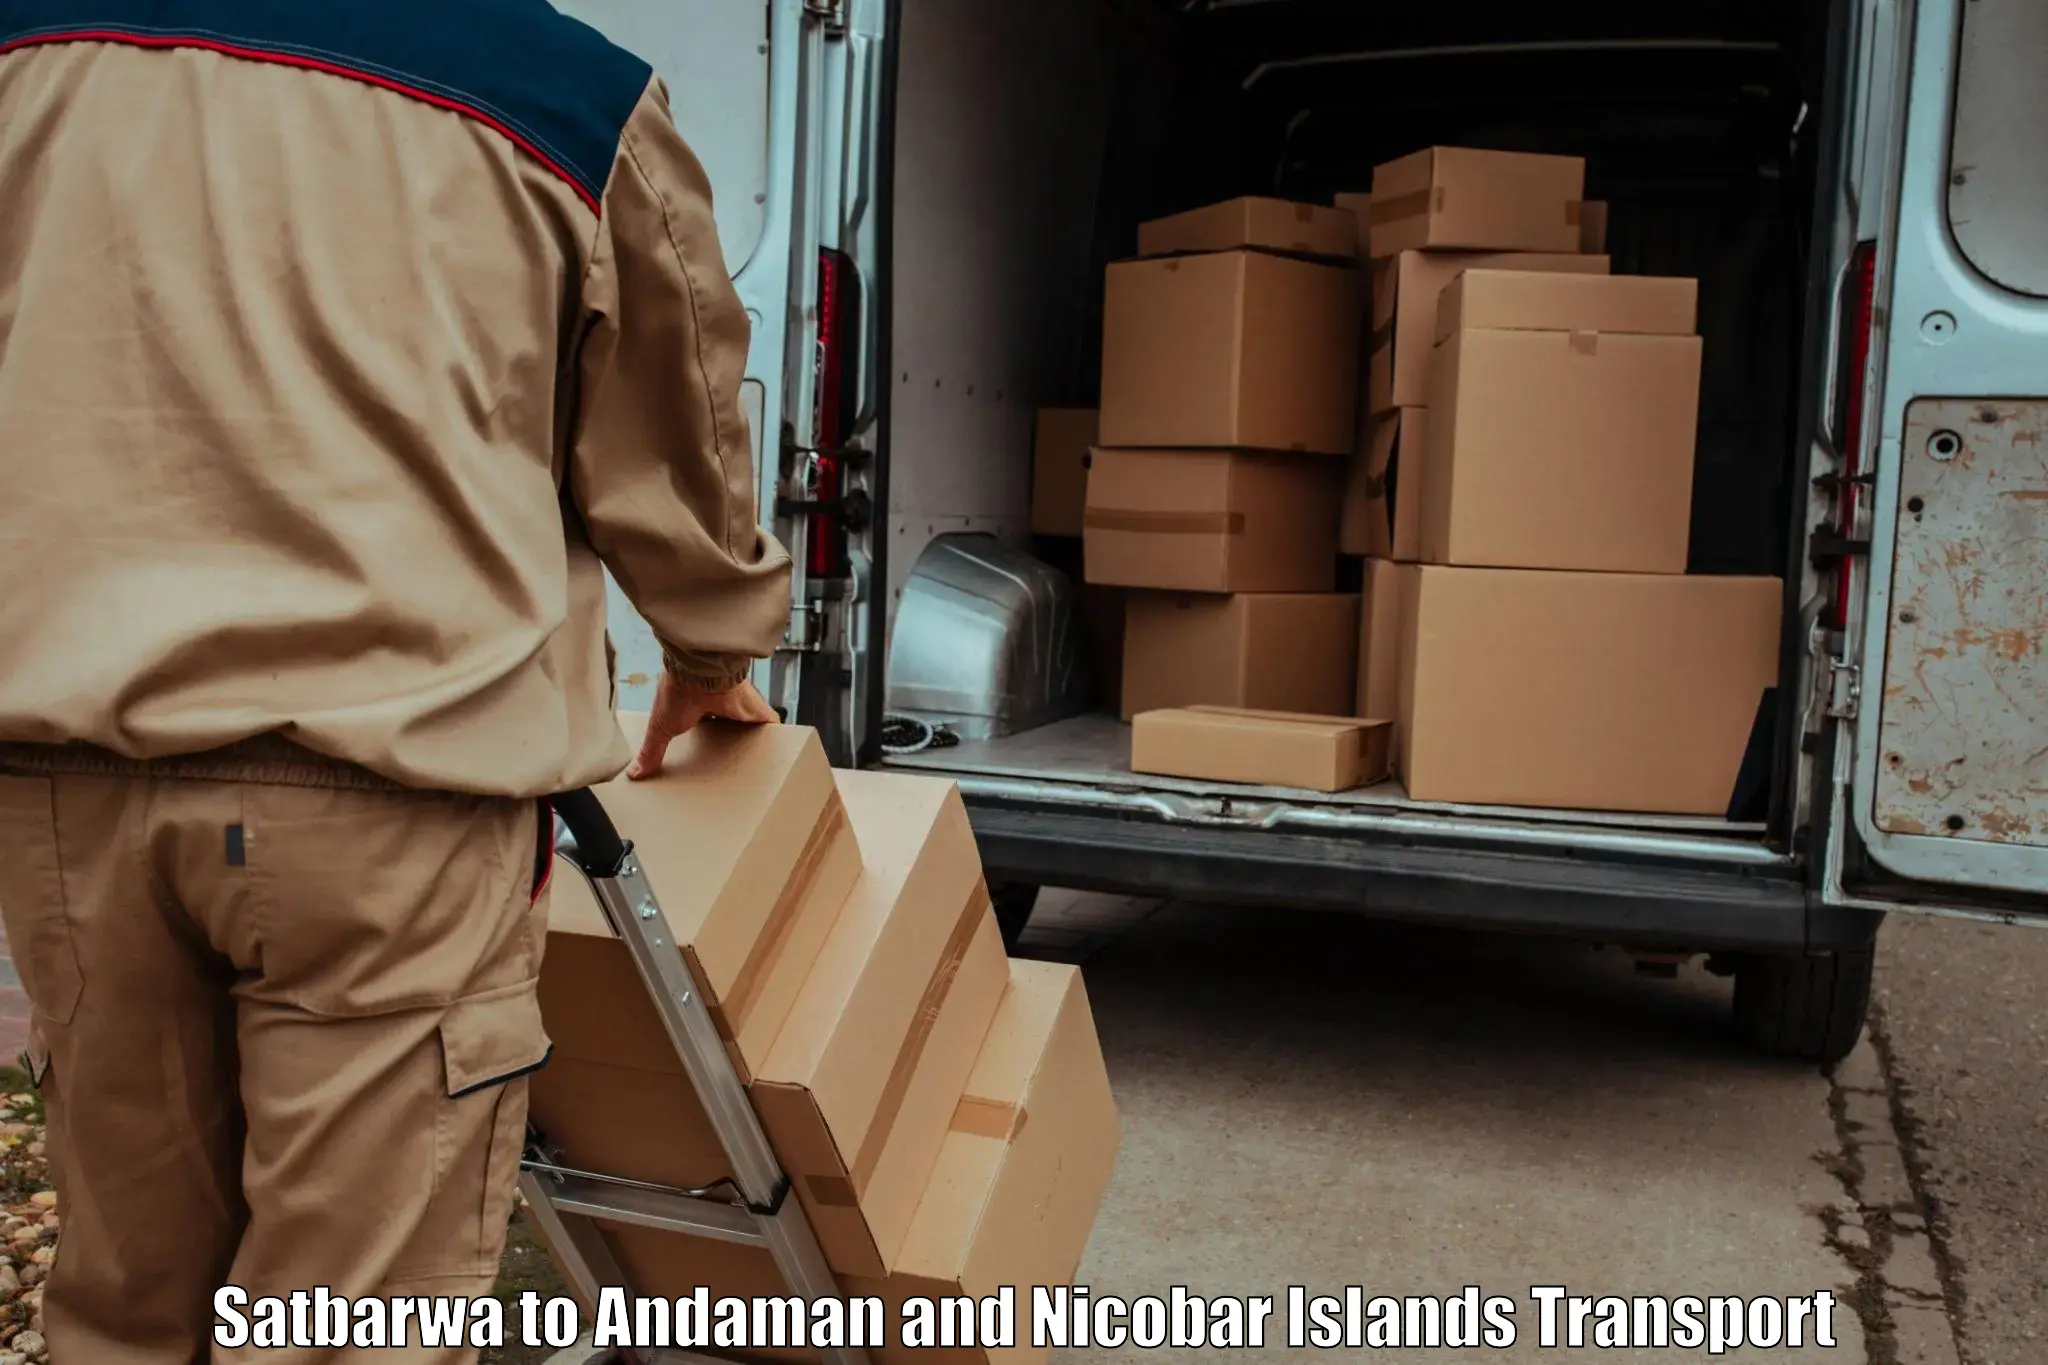 Cargo transport services Satbarwa to Andaman and Nicobar Islands